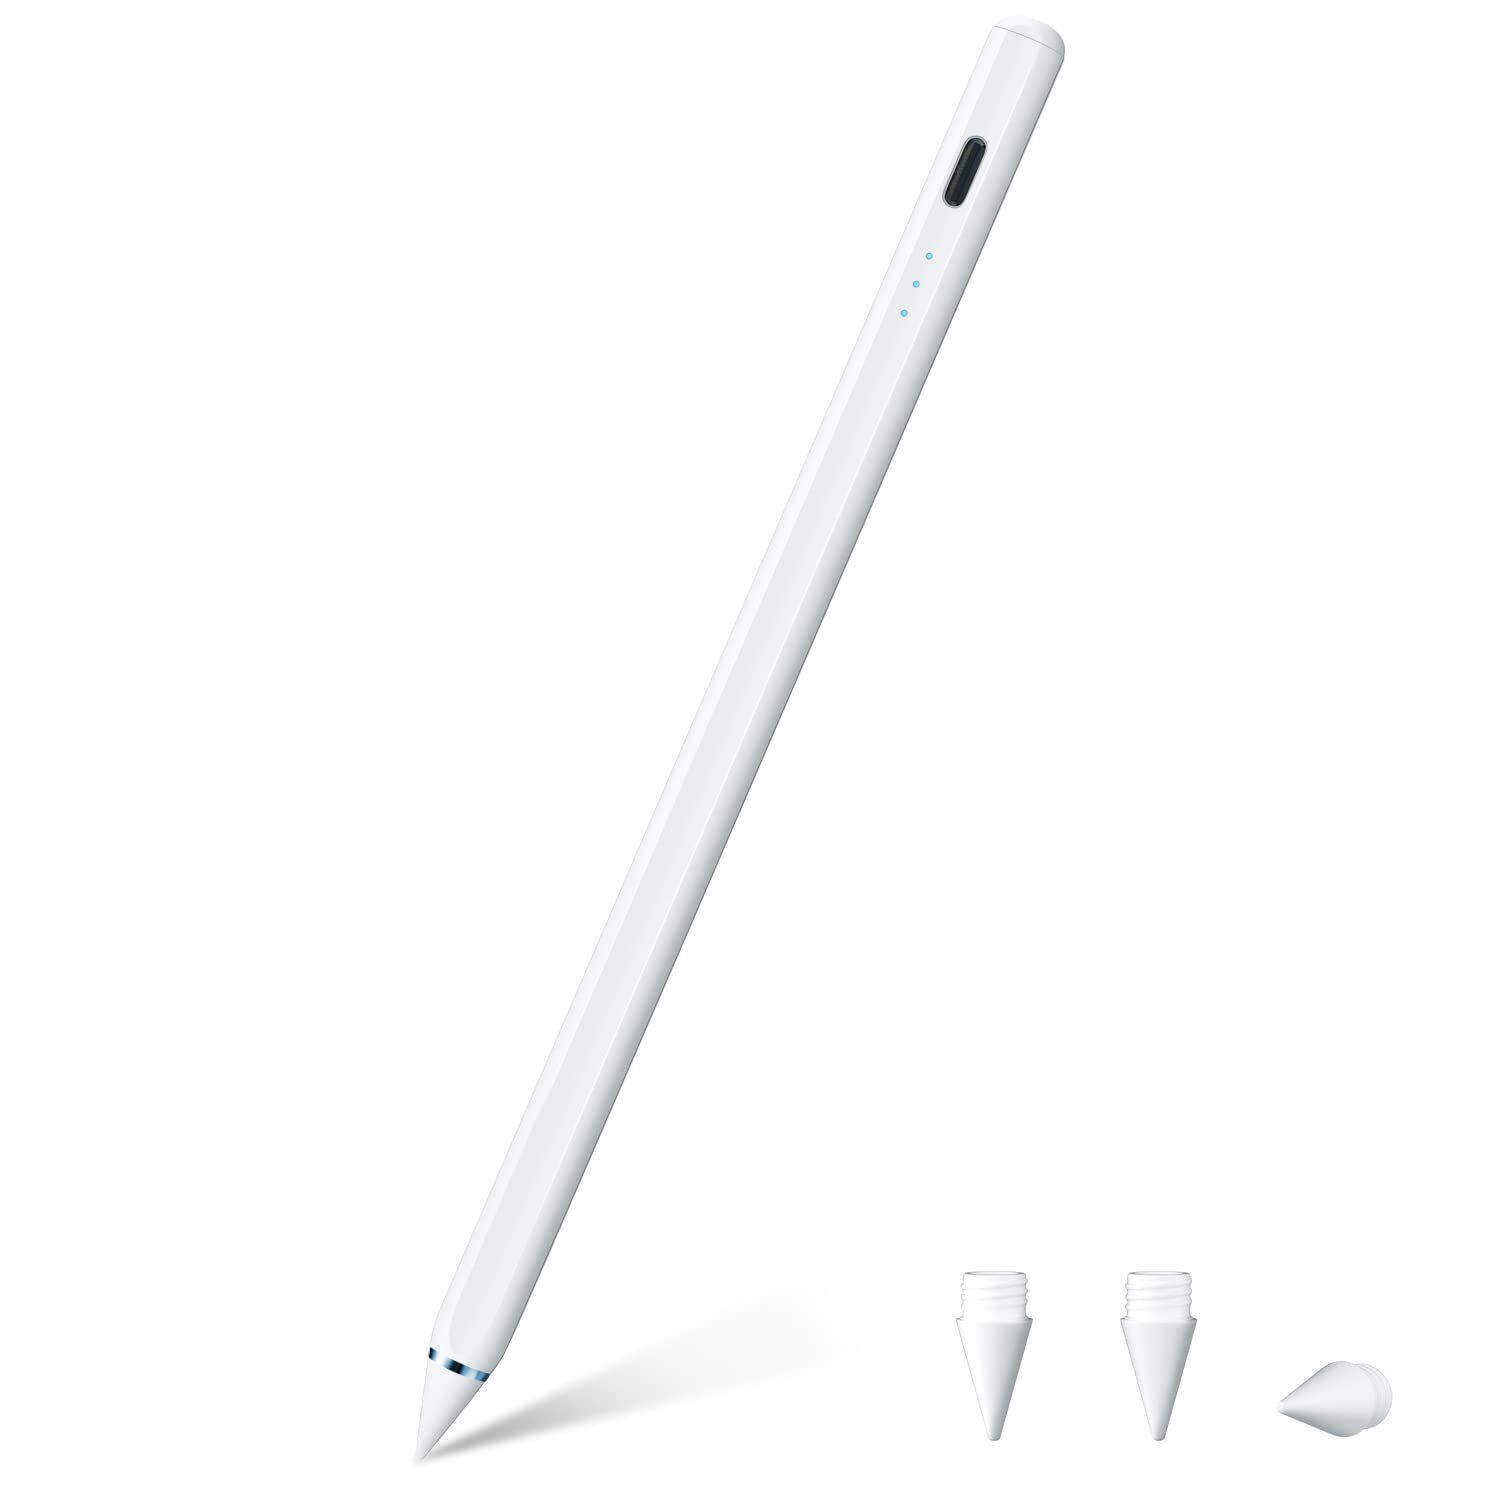 【新品未開封】スタイラスペン iPad 磁気吸着/傾き感知/誤作動防止機能対応